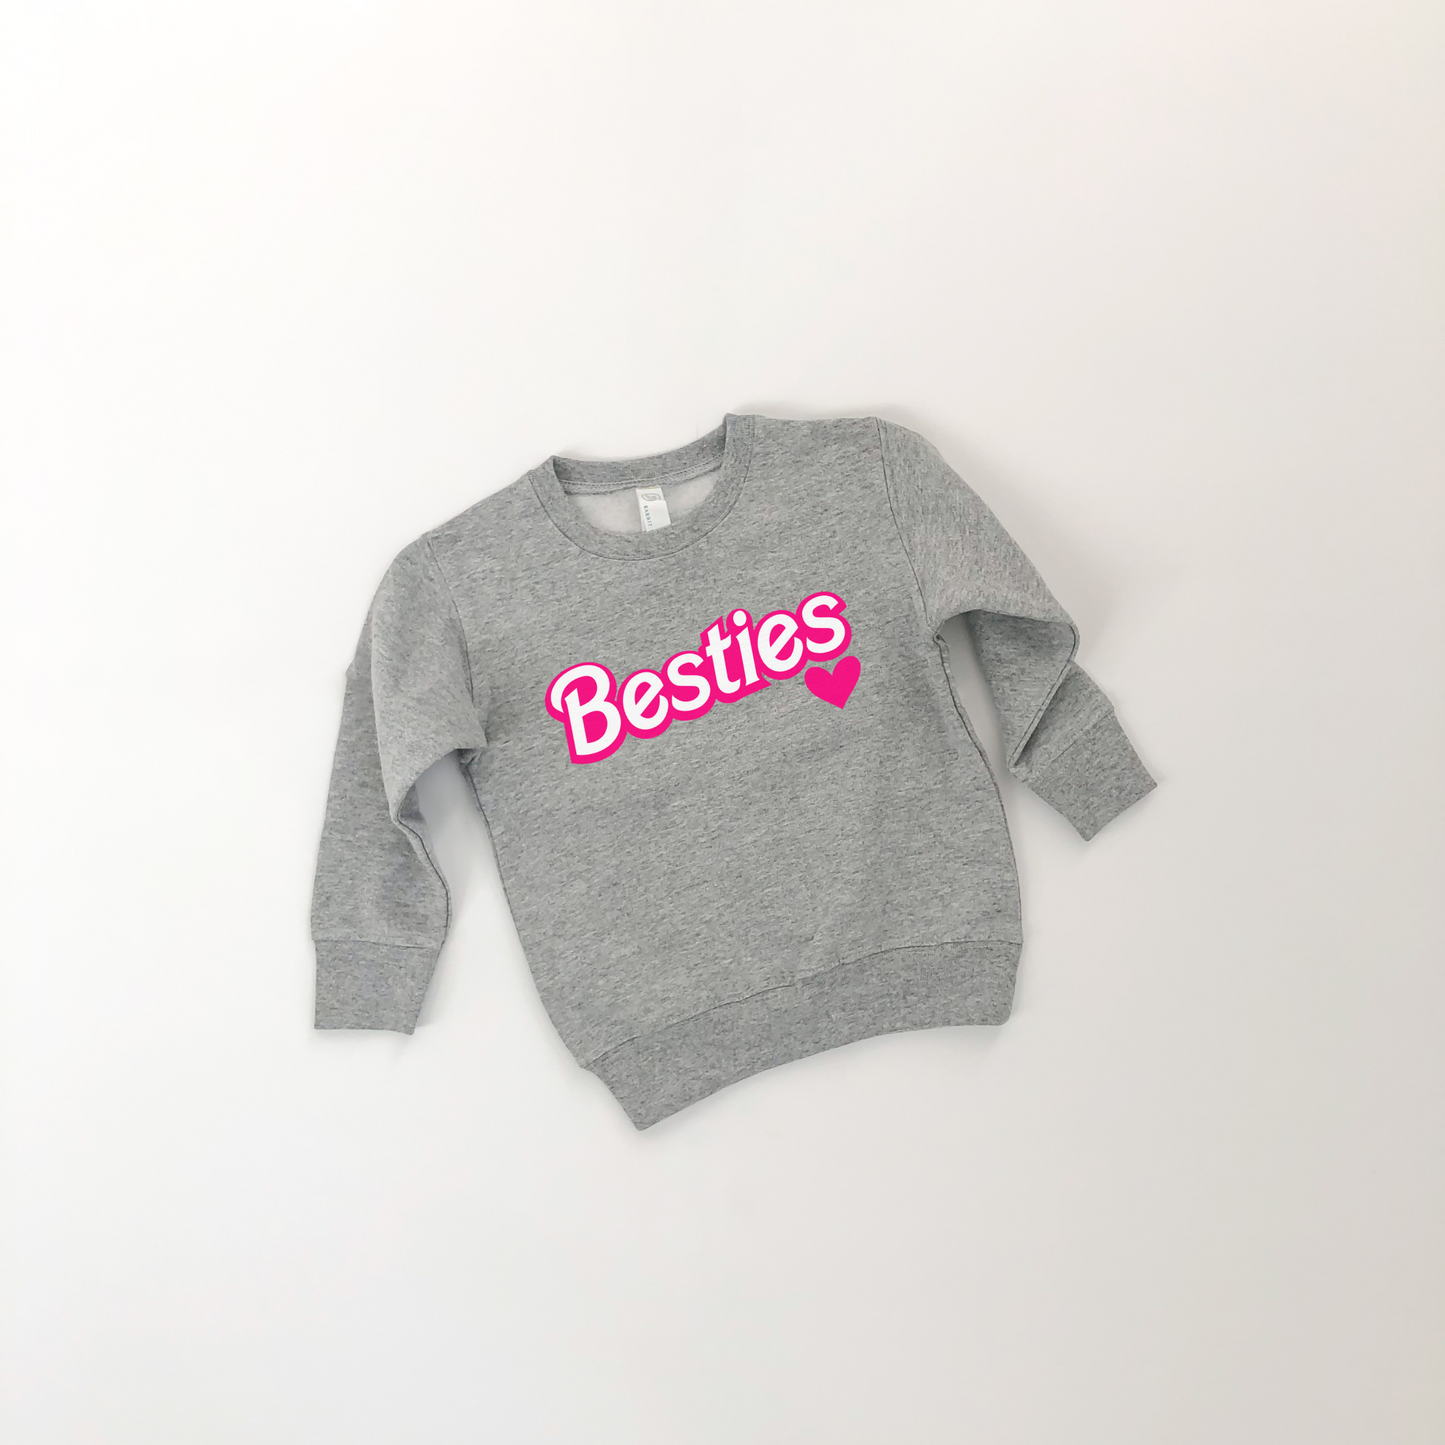 Toddler Besties Sweatshirt - PRE ORDER